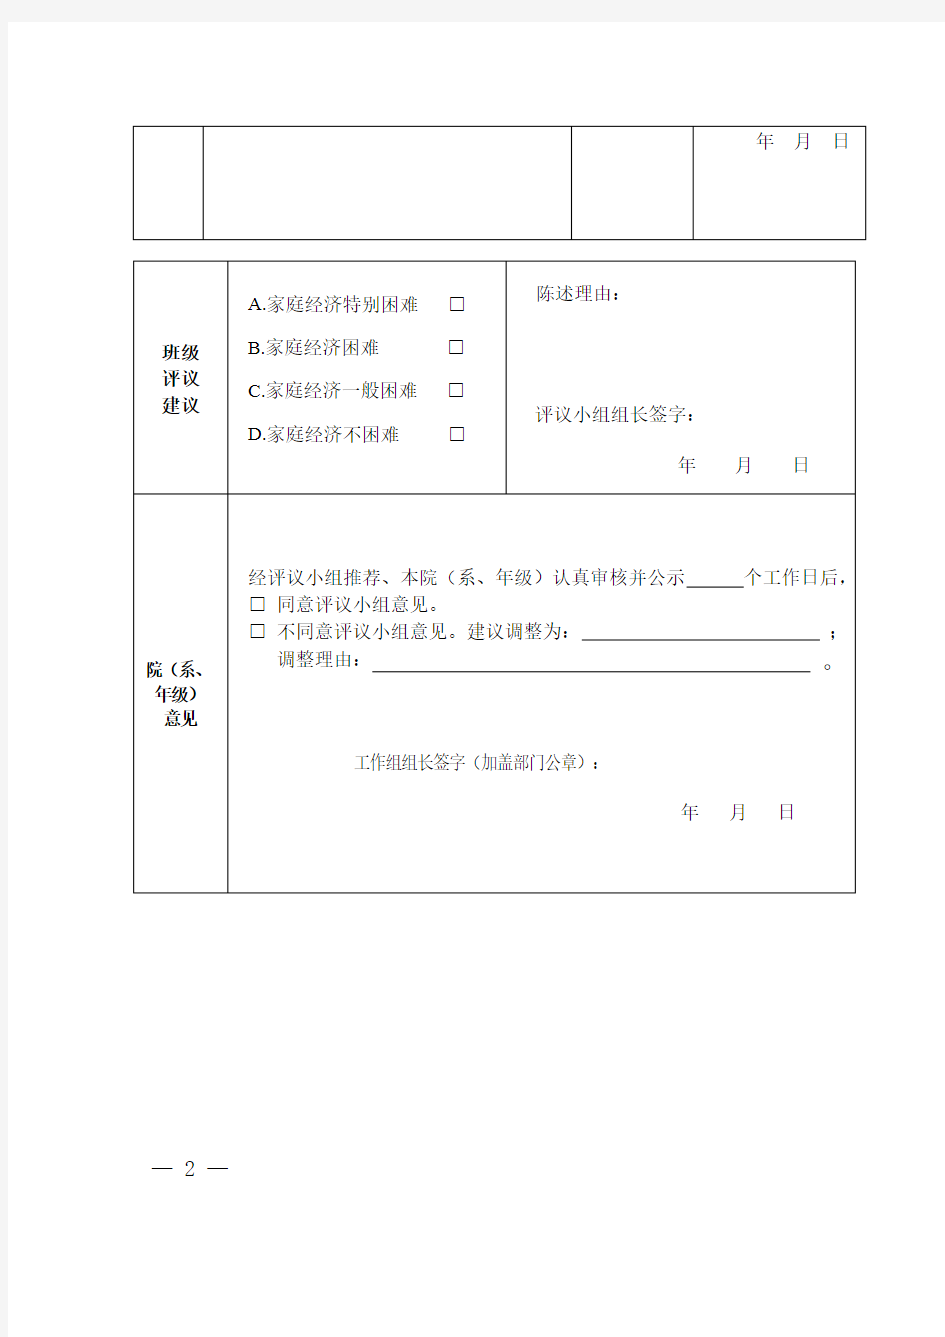 四川省家庭经济困难学生认定申请表(样表)